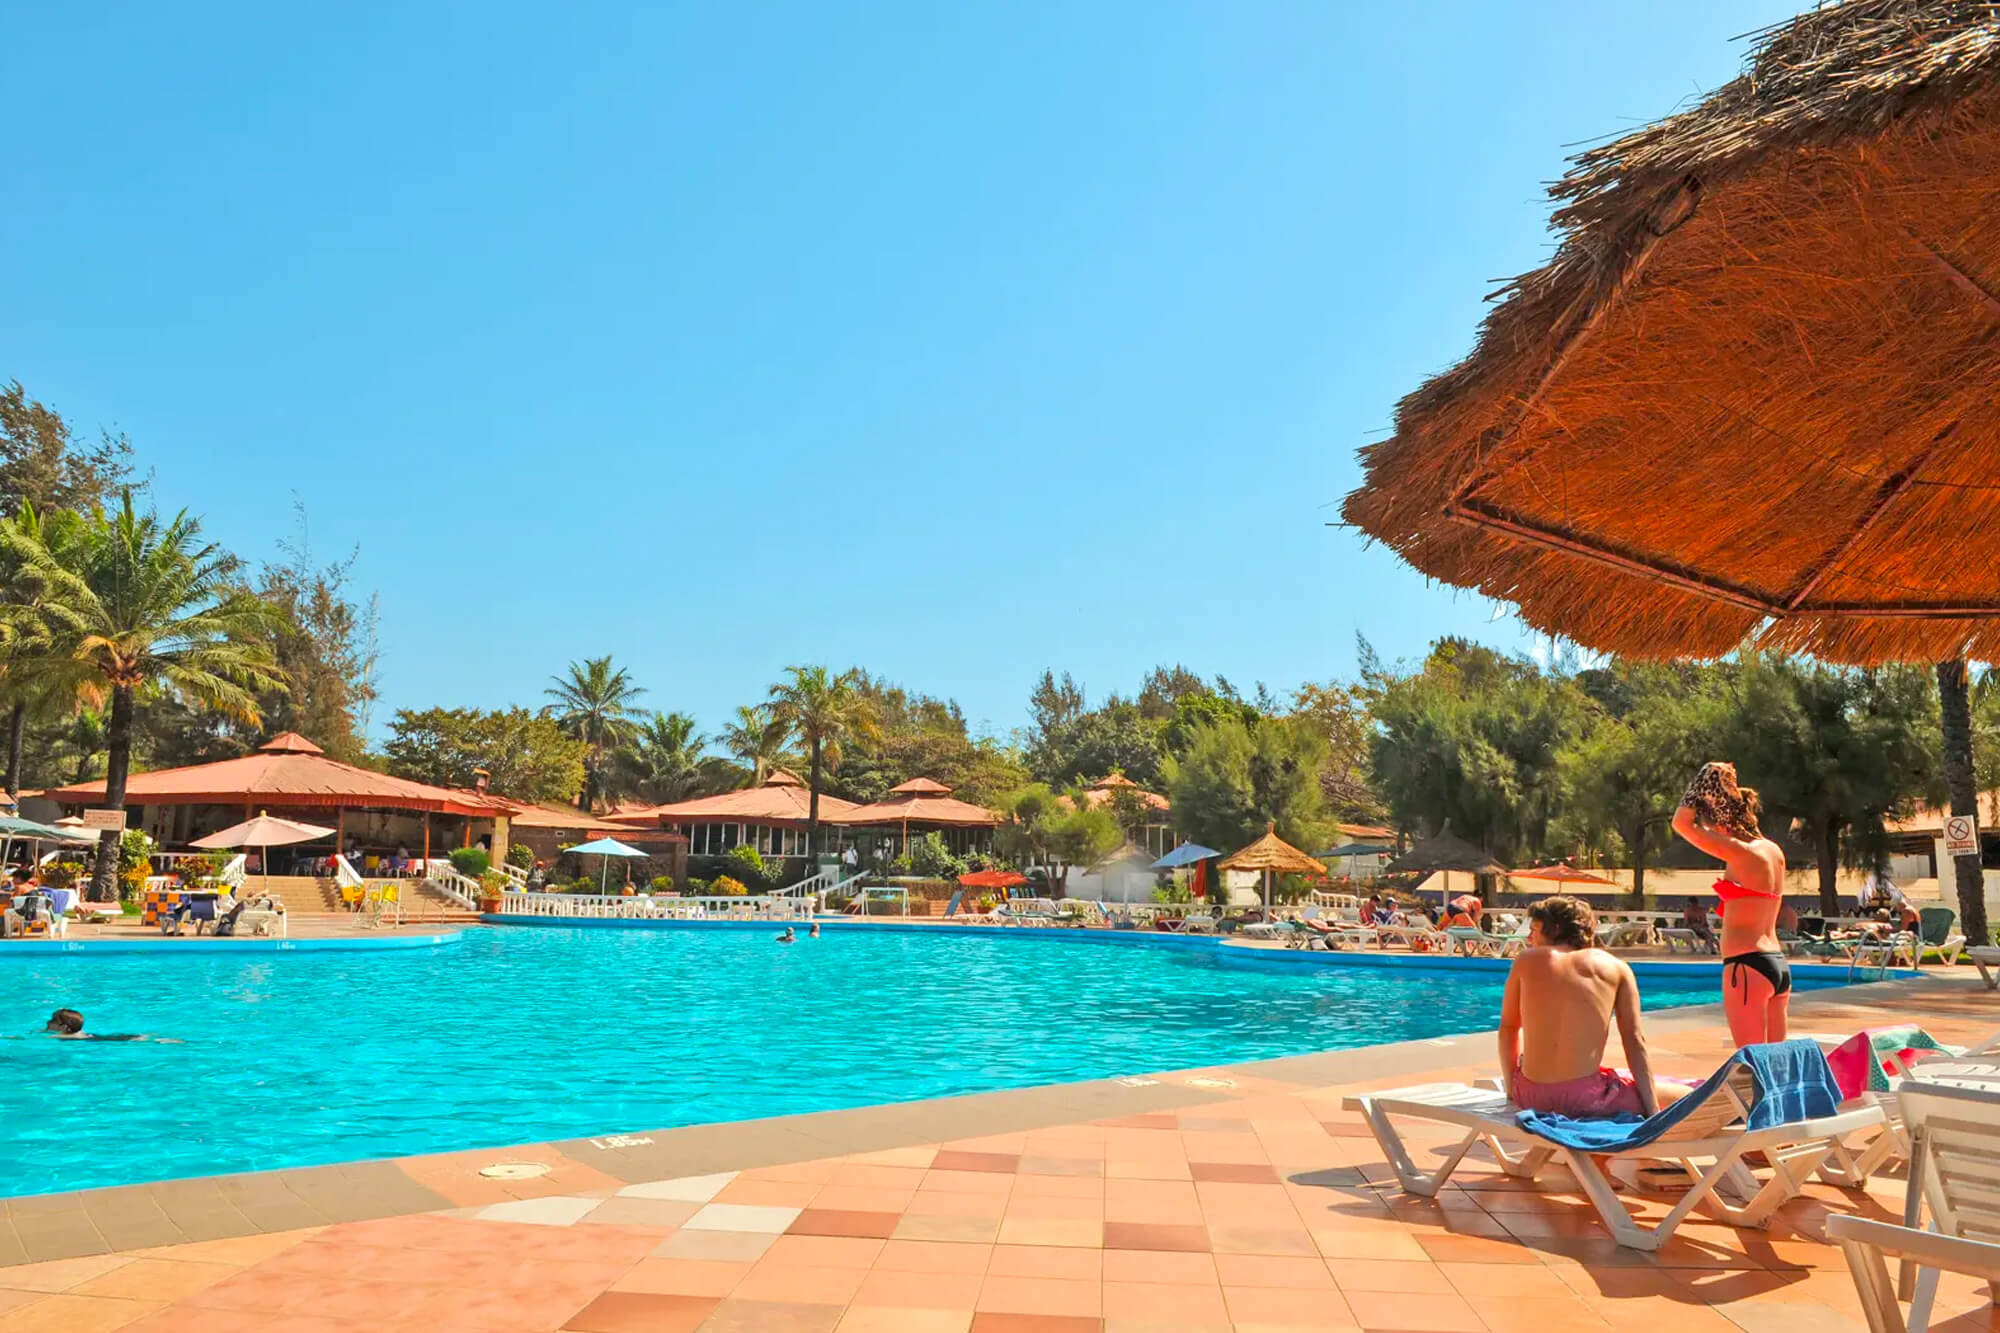 Zwembad en zonneterras van het Palma Rima hotel en resort in Gambia, Kololi